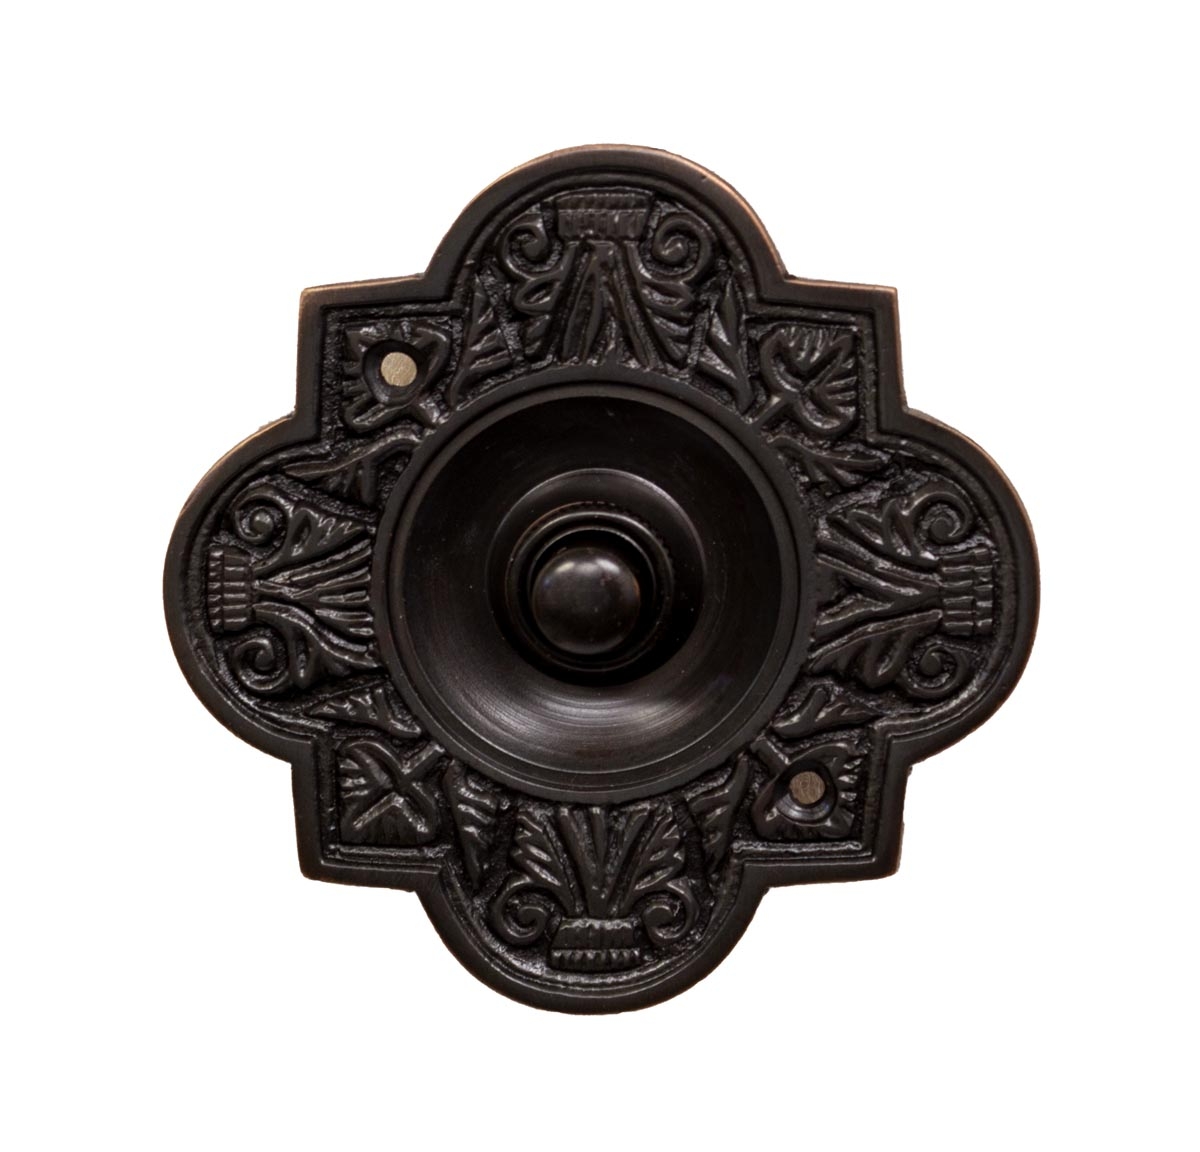 Ornate Dark Bronze Oval Doorbell Button